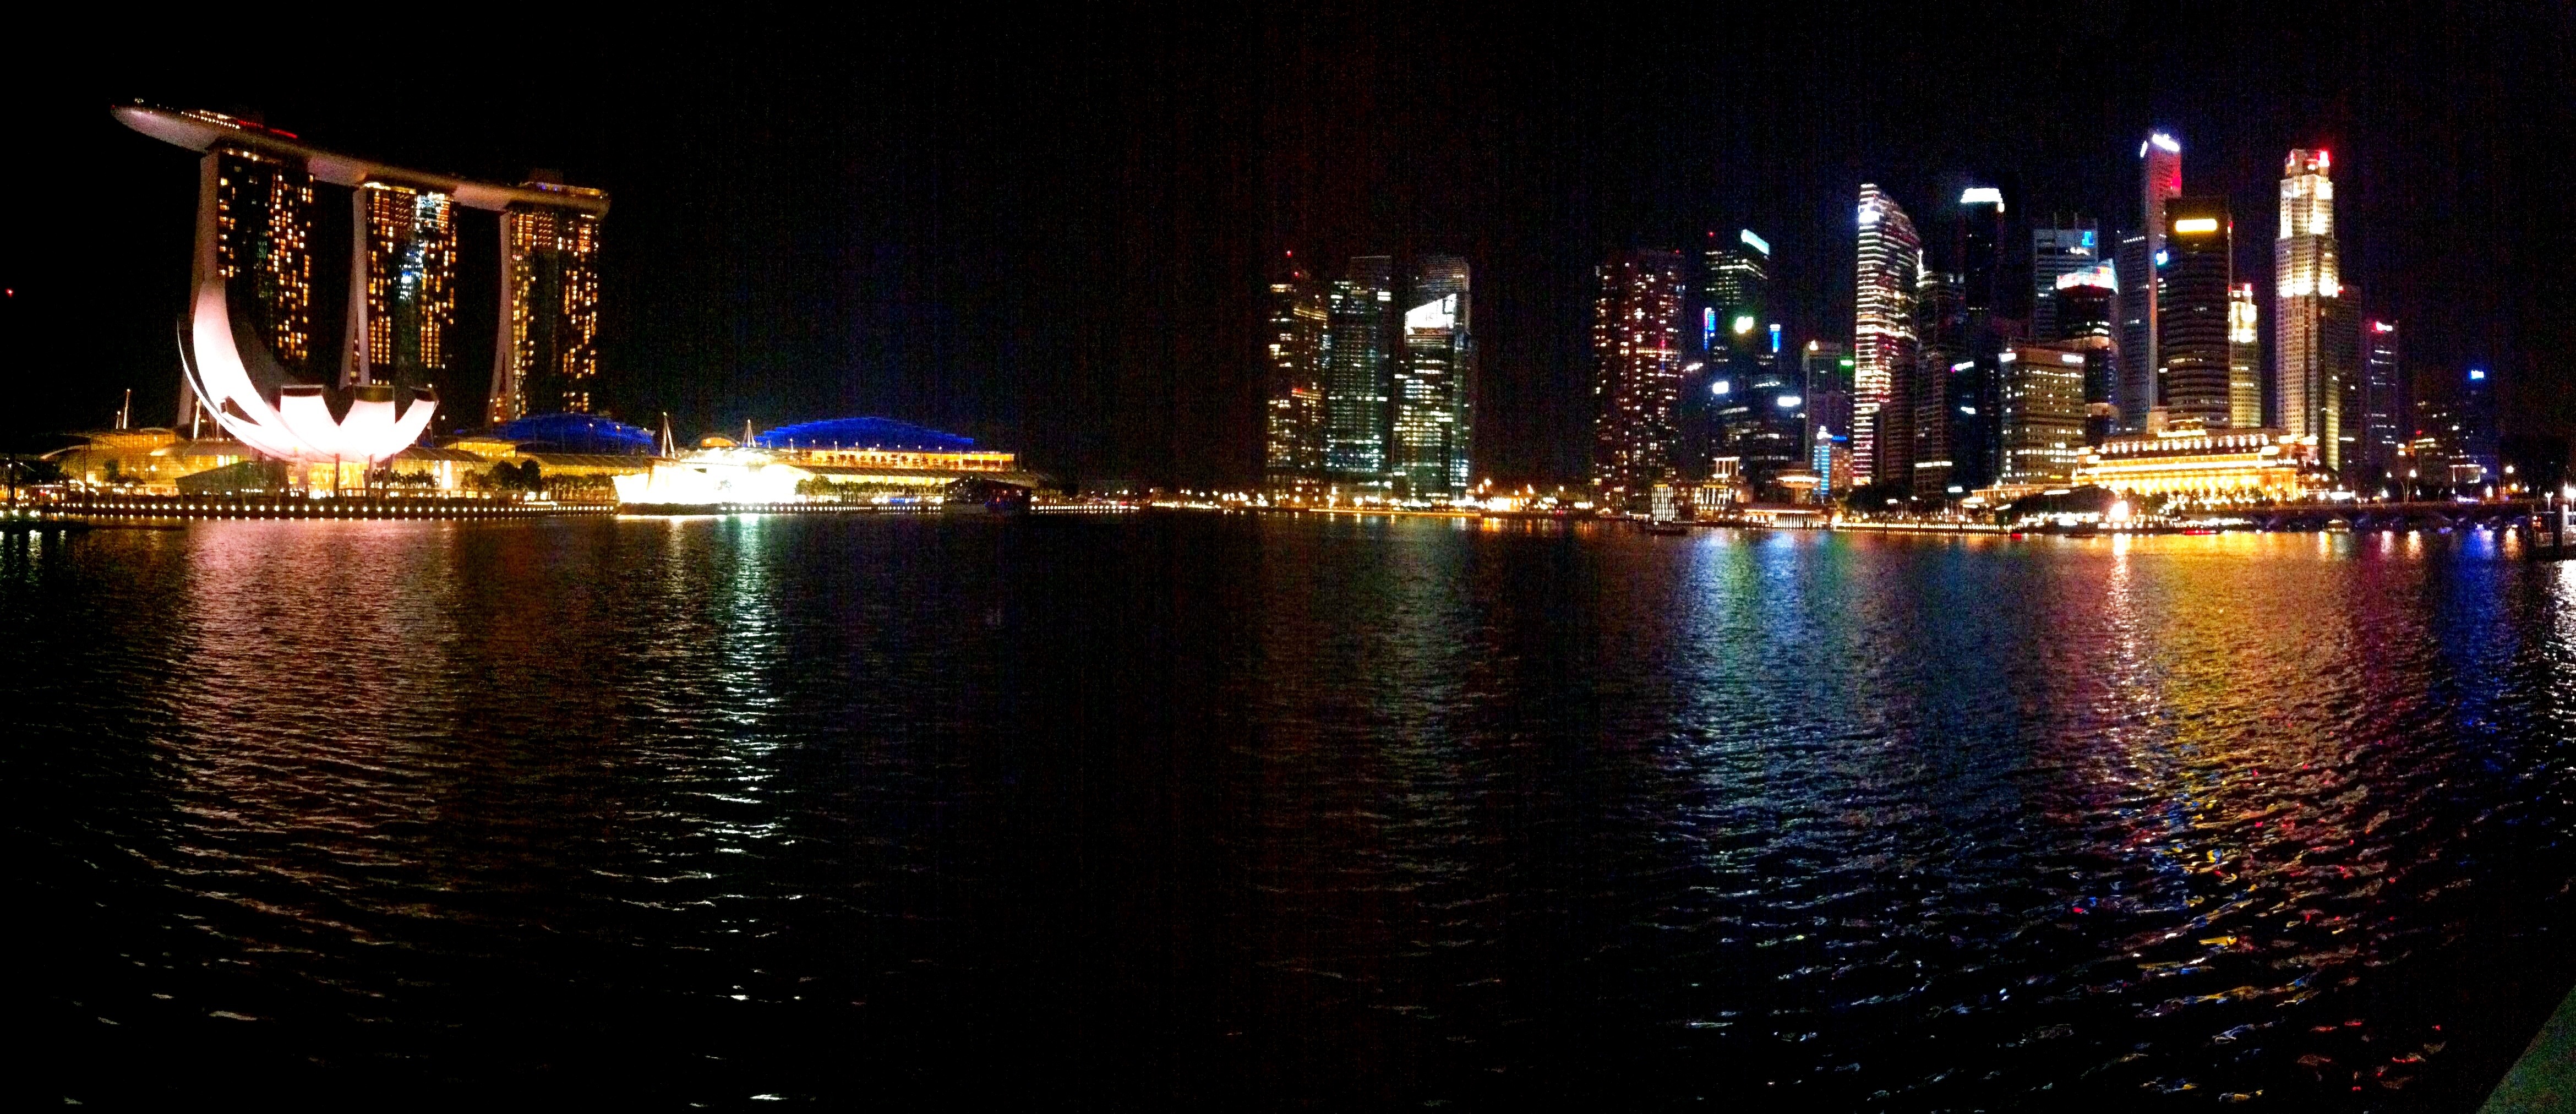 Panoramic View of Singapore City Skyline at Night 2012 â€